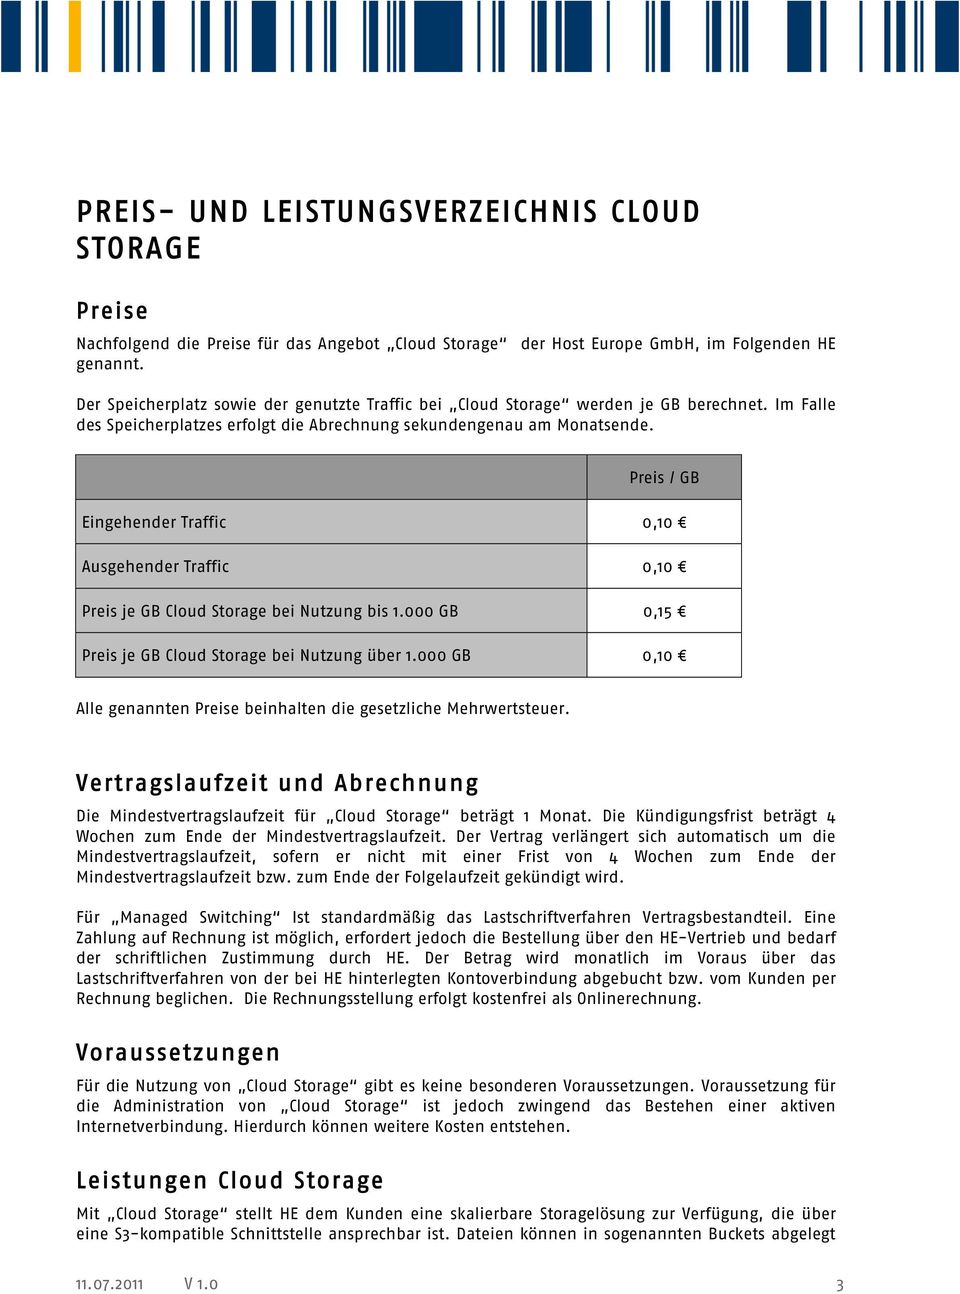 Preis / GB Eingehender Traffic 0,10 Ausgehender Traffic 0,10 Preis je GB Cloud Storage bei Nutzung bis 1.000 GB 0,15 Preis je GB Cloud Storage bei Nutzung über 1.